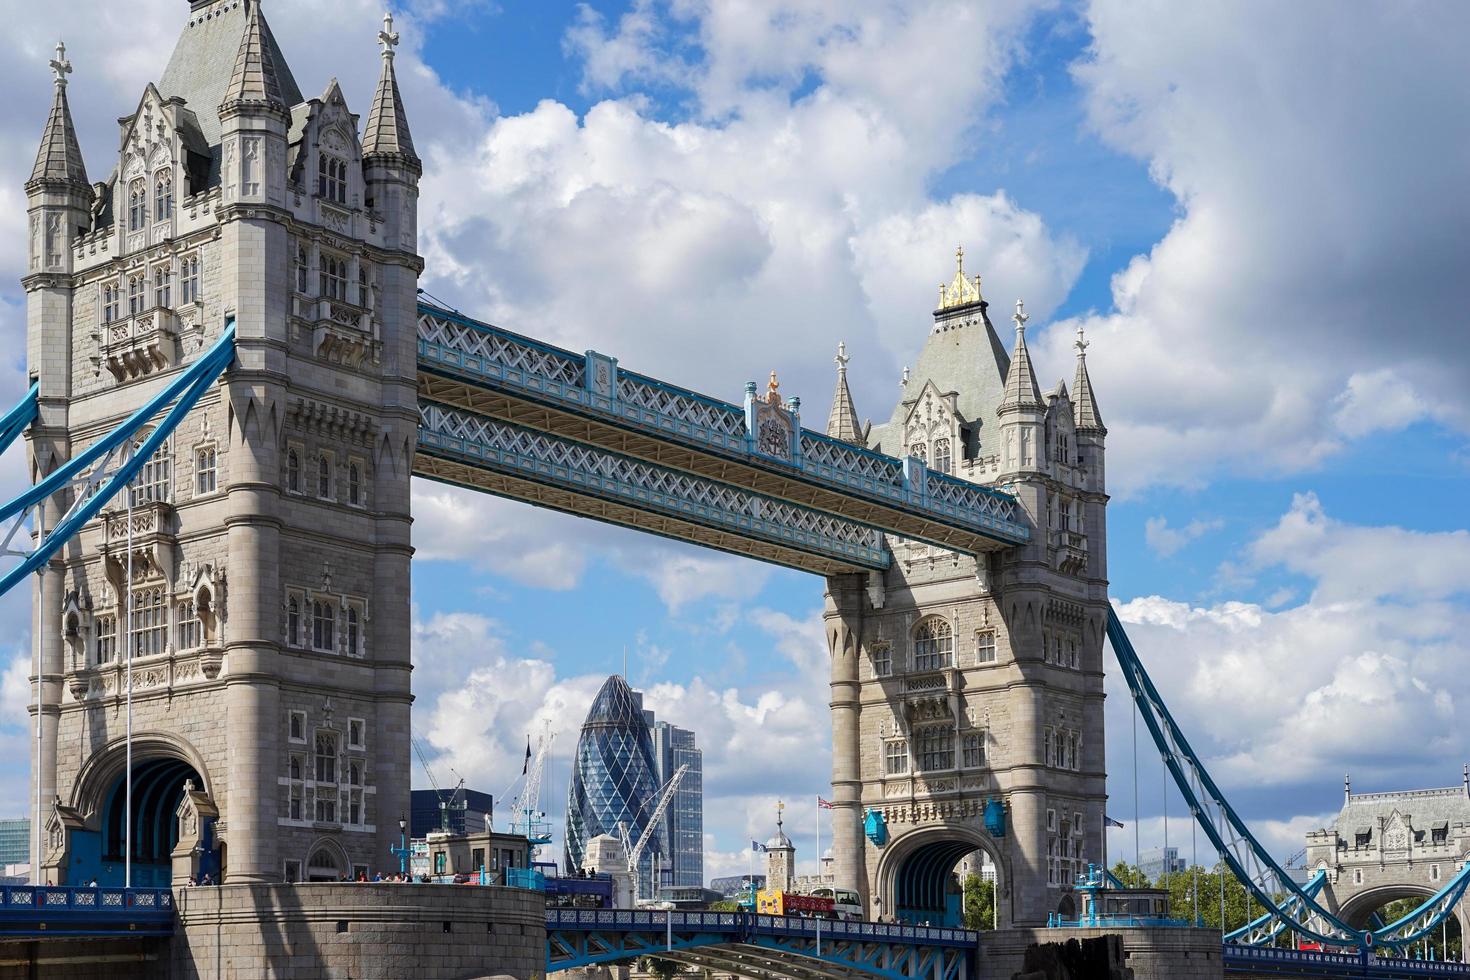 Londen, uk. toren brug overspannende de rivier- Theems foto